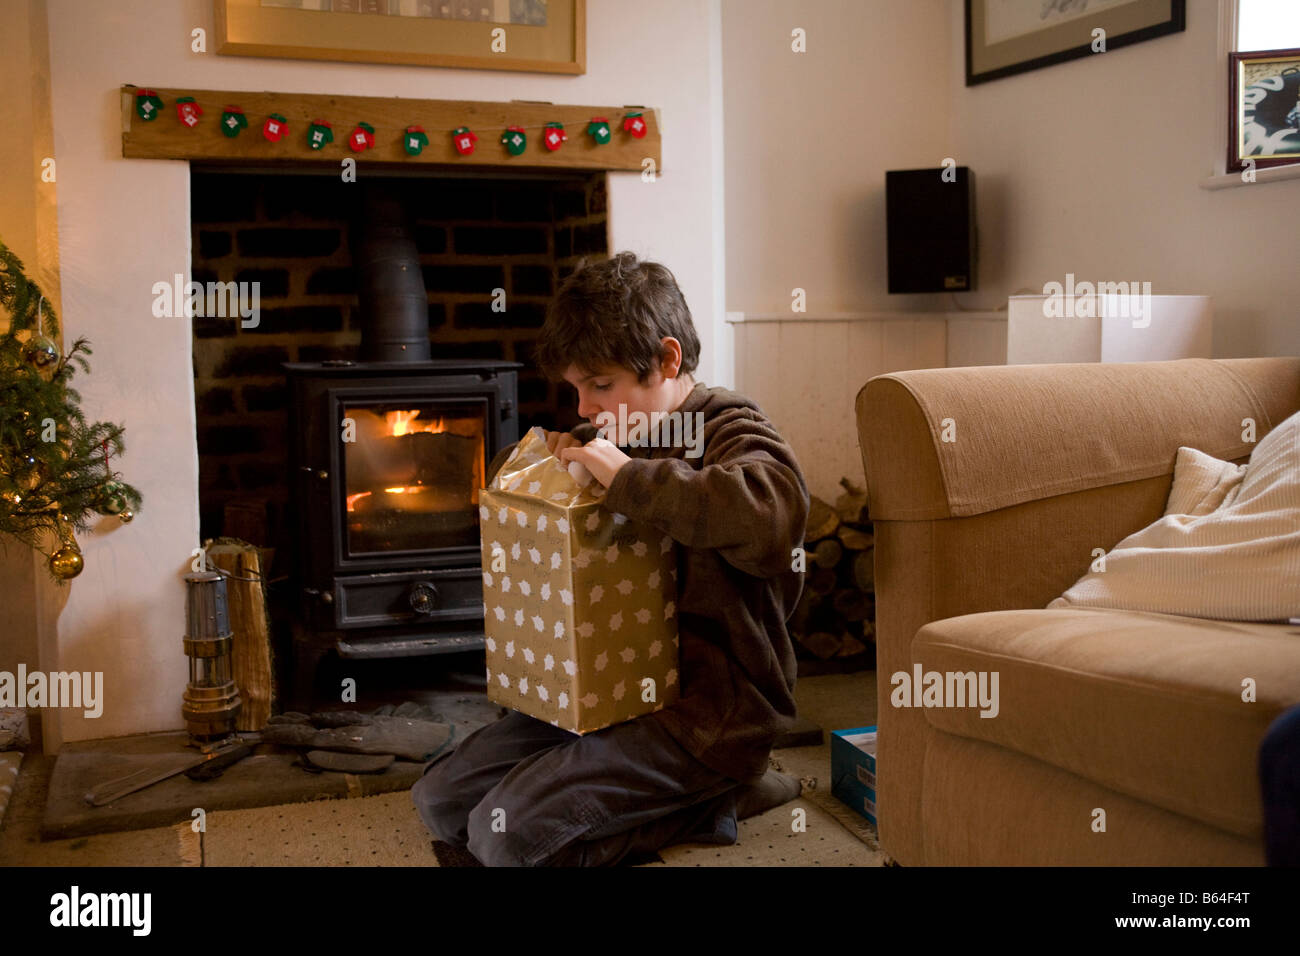 Muchacho de 11 años abrir un regalo de navidad enfrente de un incendio real Foto de stock